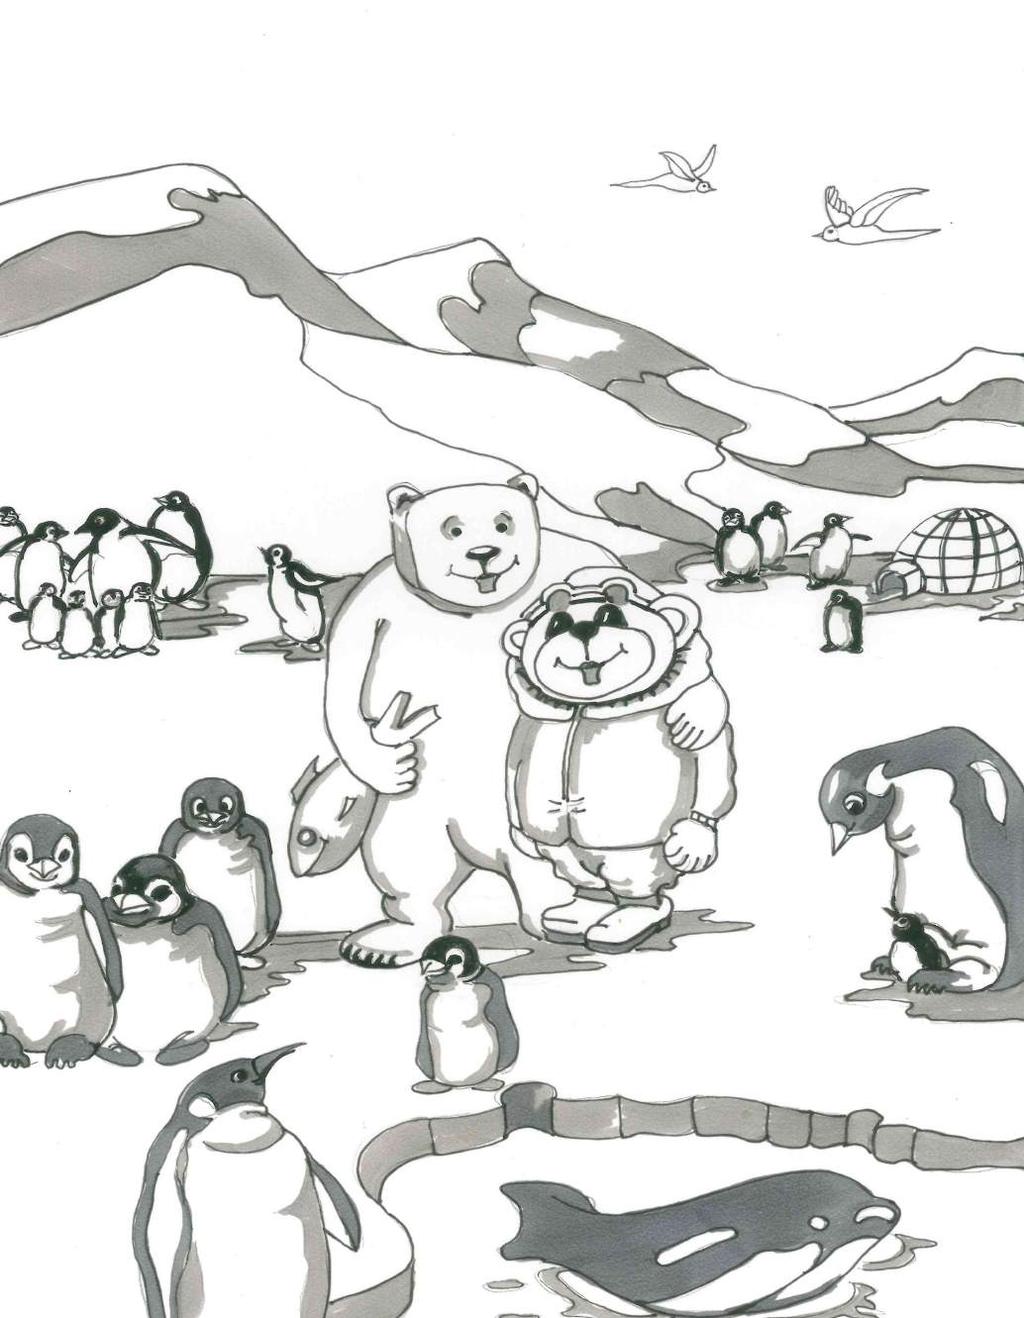 TOMMY IN DER ANTARKTIS Selbst mit meinem kuschelig warmen Bärenfell war es am Südpol etwas zu frostig für mich. Wusstet ihr, dass Eisbären und Pinguine normalerweise niemals aufeinander treffen?